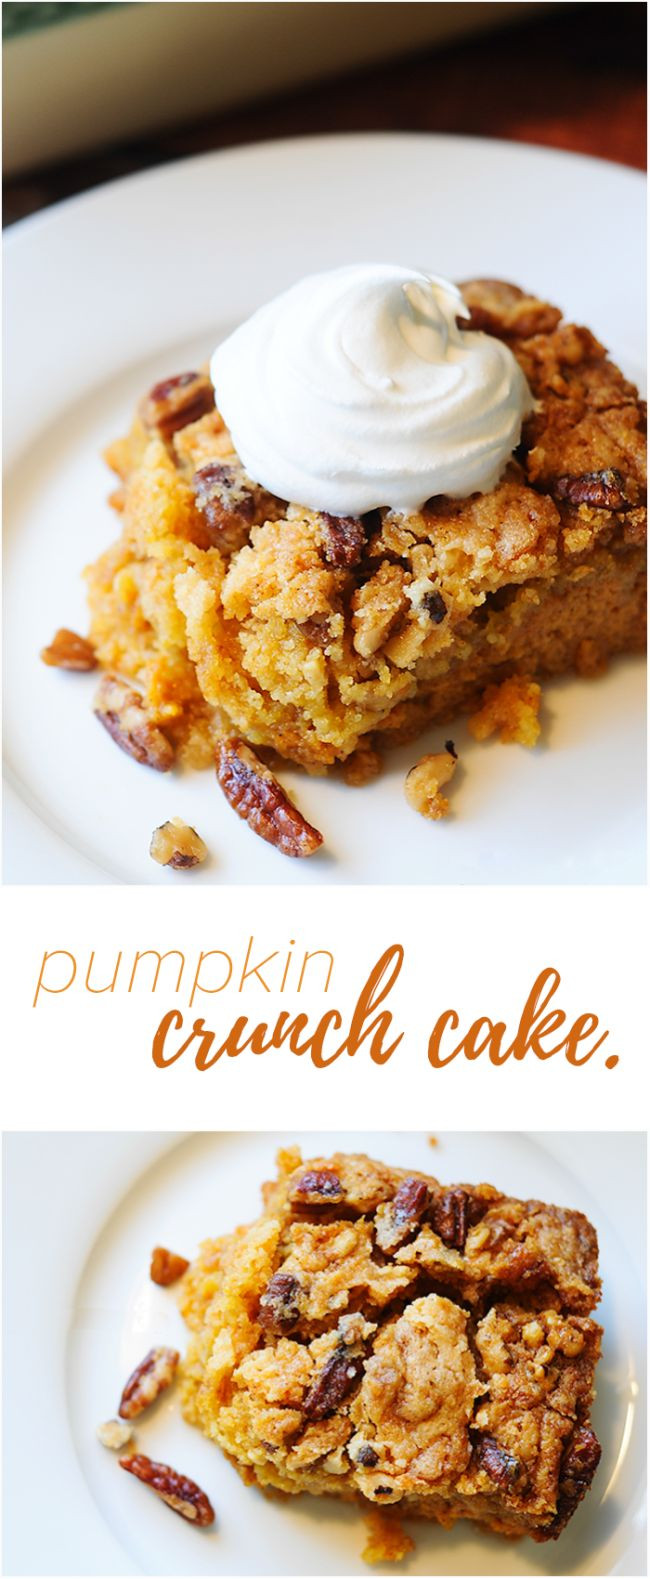 Pumpkin Recipes For Fall
 Best 25 Pumpkin dessert ideas on Pinterest